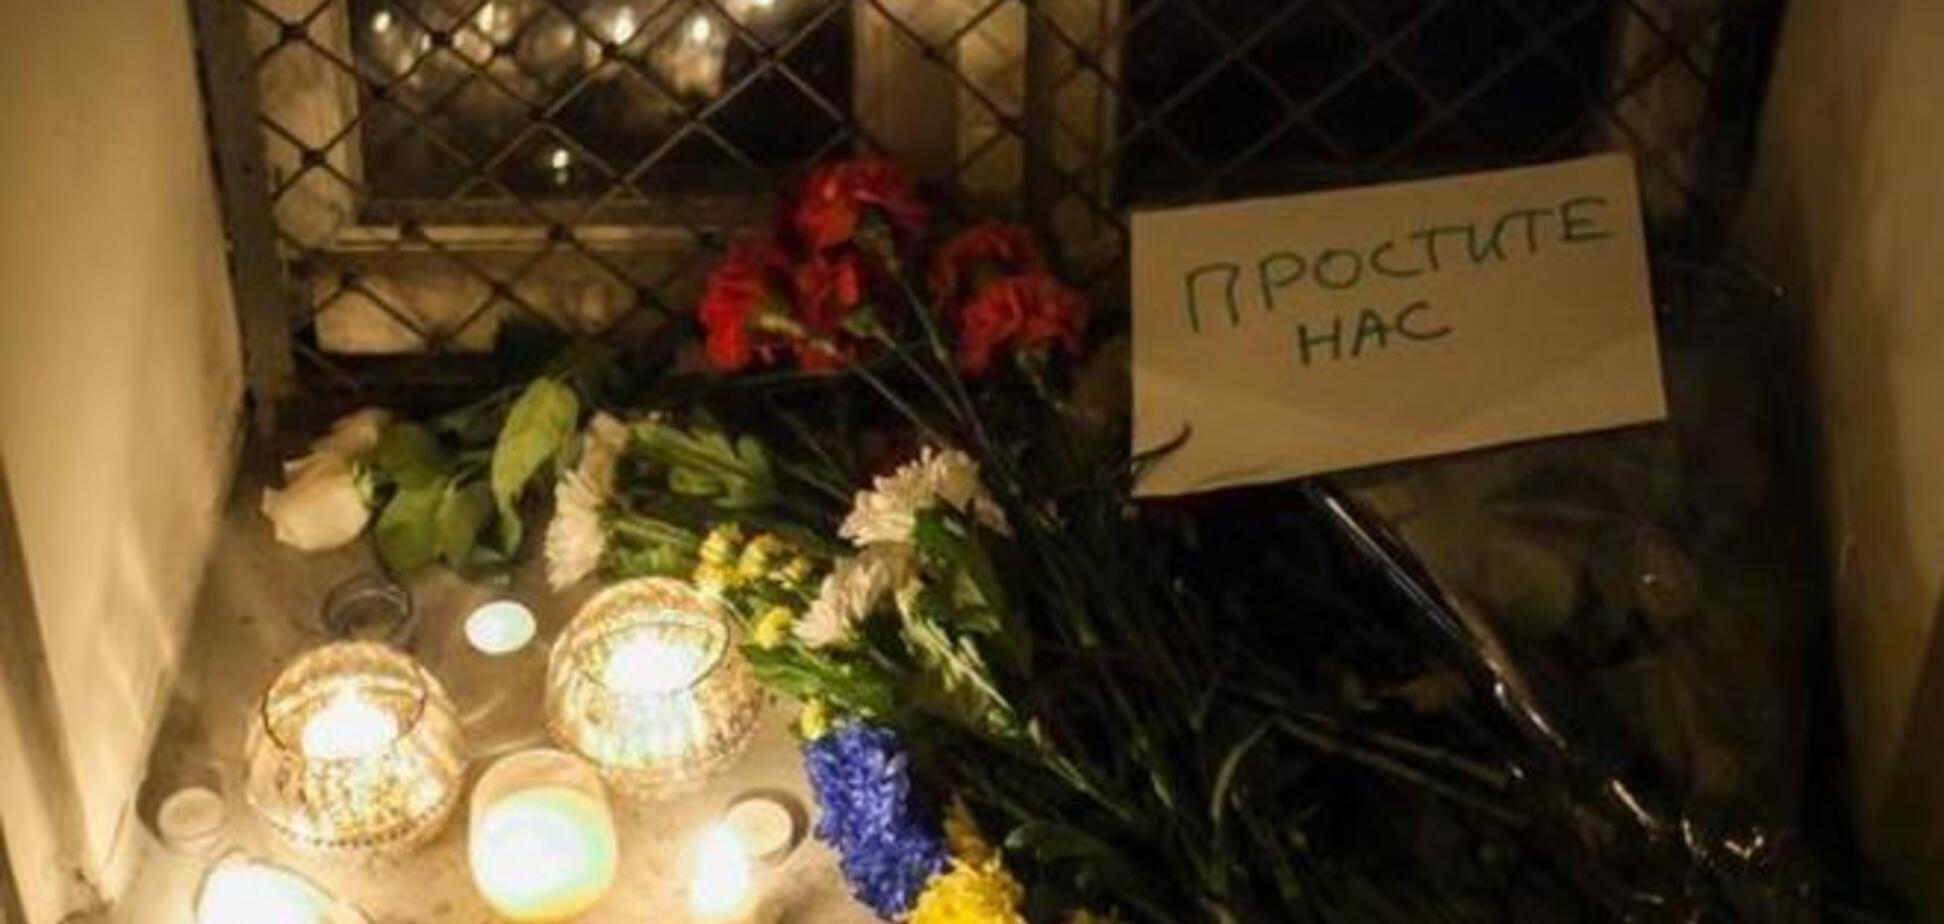 Одиниці москвичів принесли до посольства Нідерландів свічки і записки 'вибачте нас'